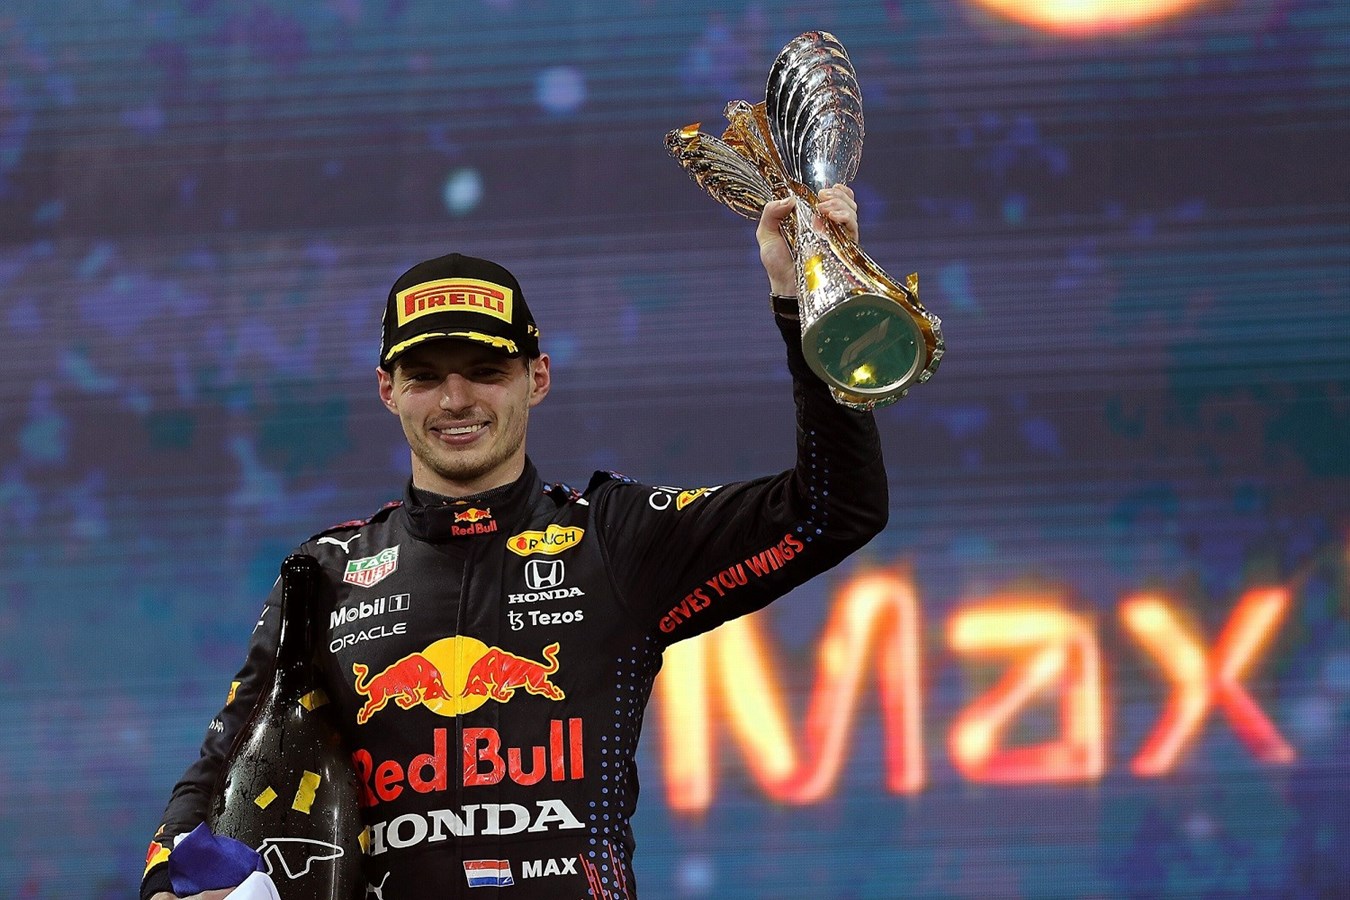 Bouquet final grandiose pour Honda: Max Verstappen remporte le titre mondial de Formule 1 FIA